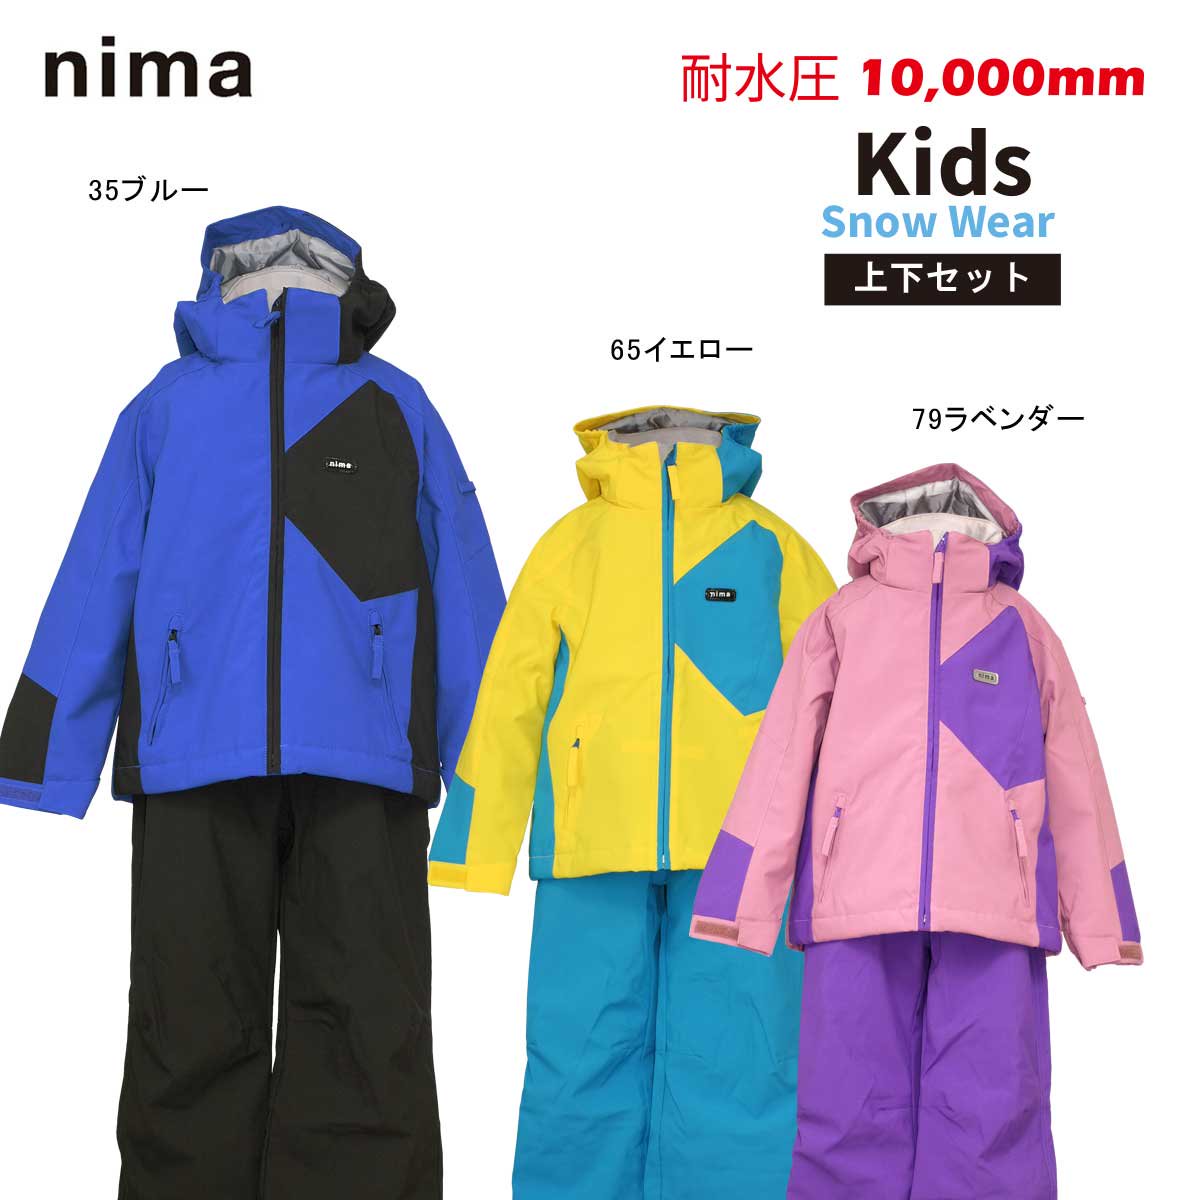 スキーウェア nima(ニーマ) キッズ90cm - ウエア(子ども用)